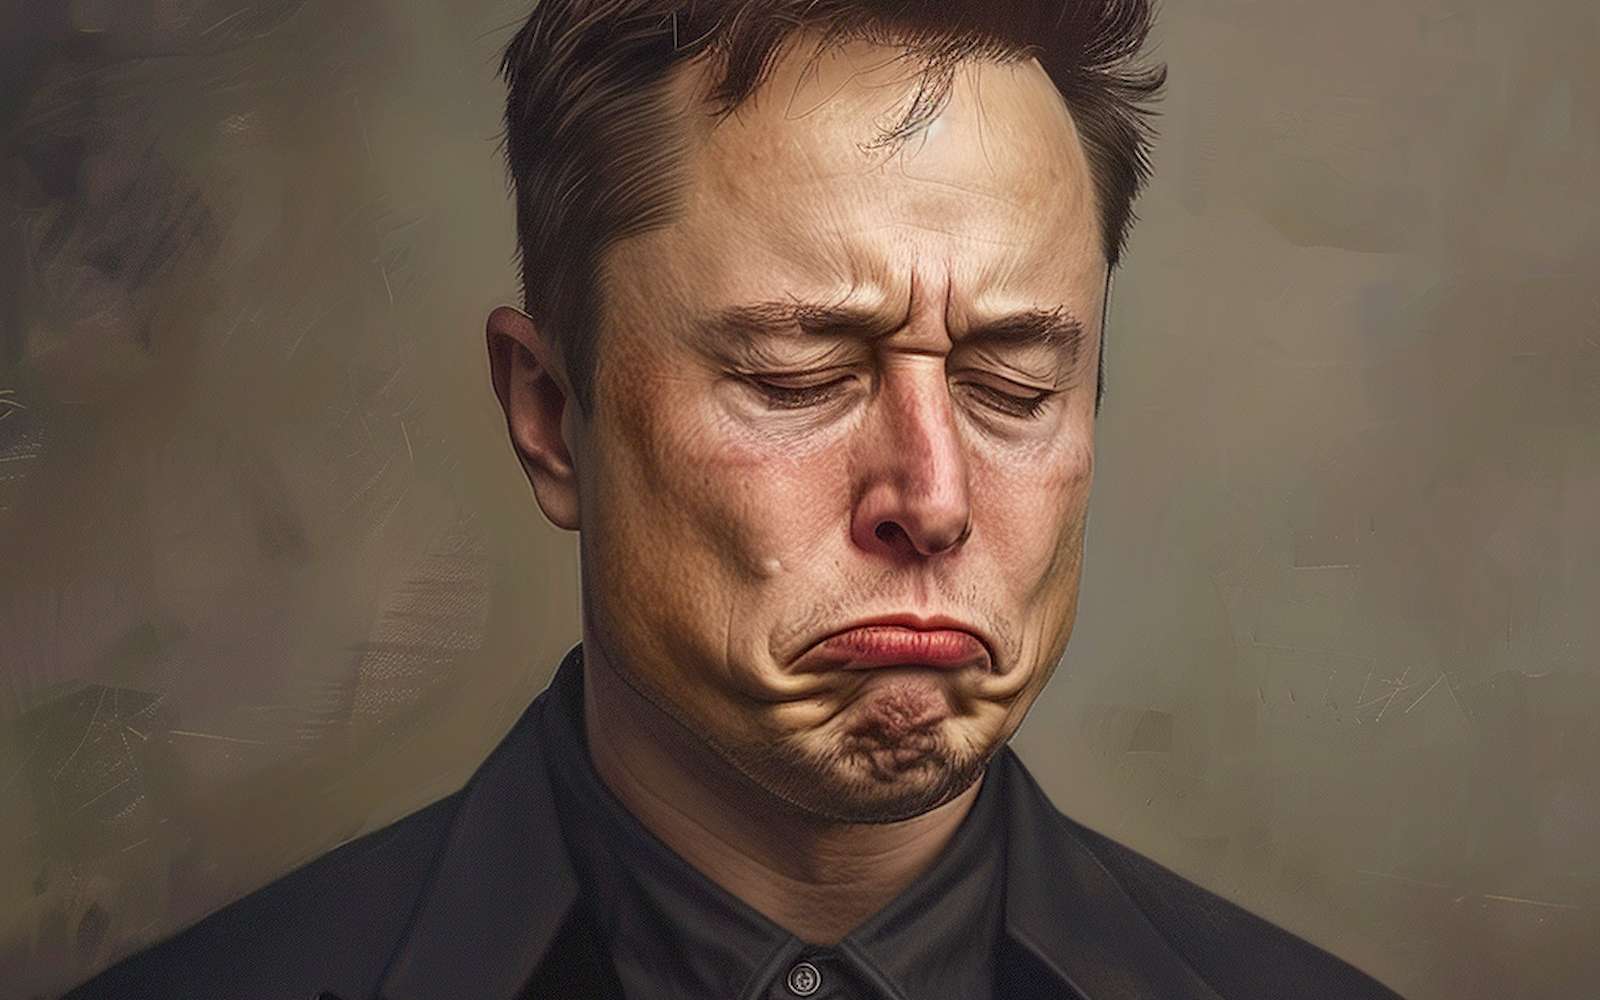 Elon Musk critique vertement ChatGPT et l'accuse de vouloir détruire l'humanité !